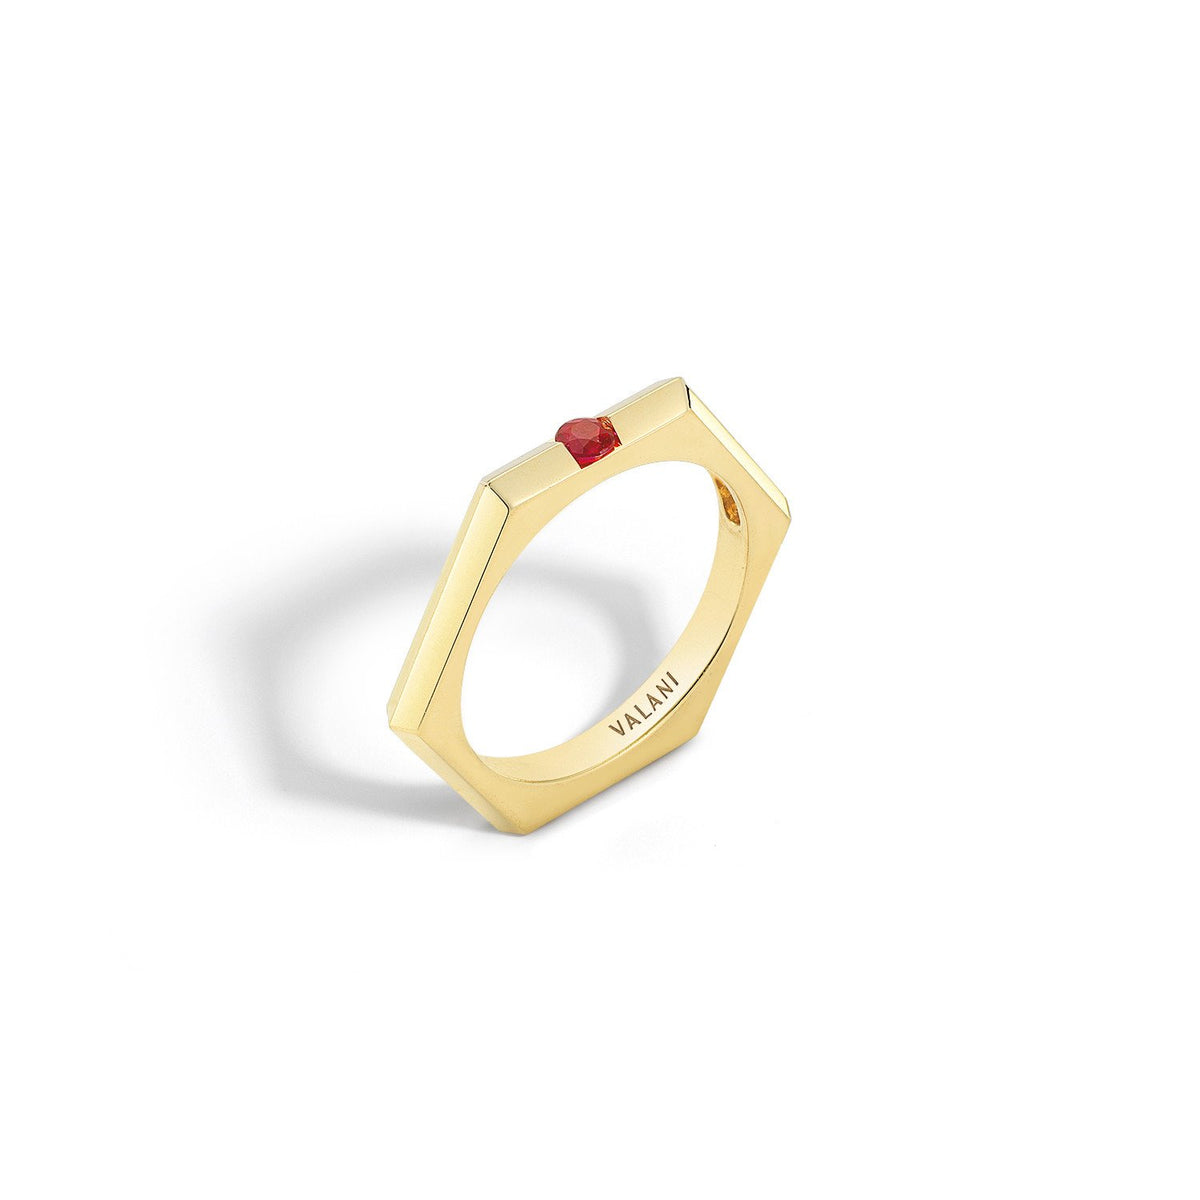 Valani 18K Yellow Gold Hexa I Ruby Ring